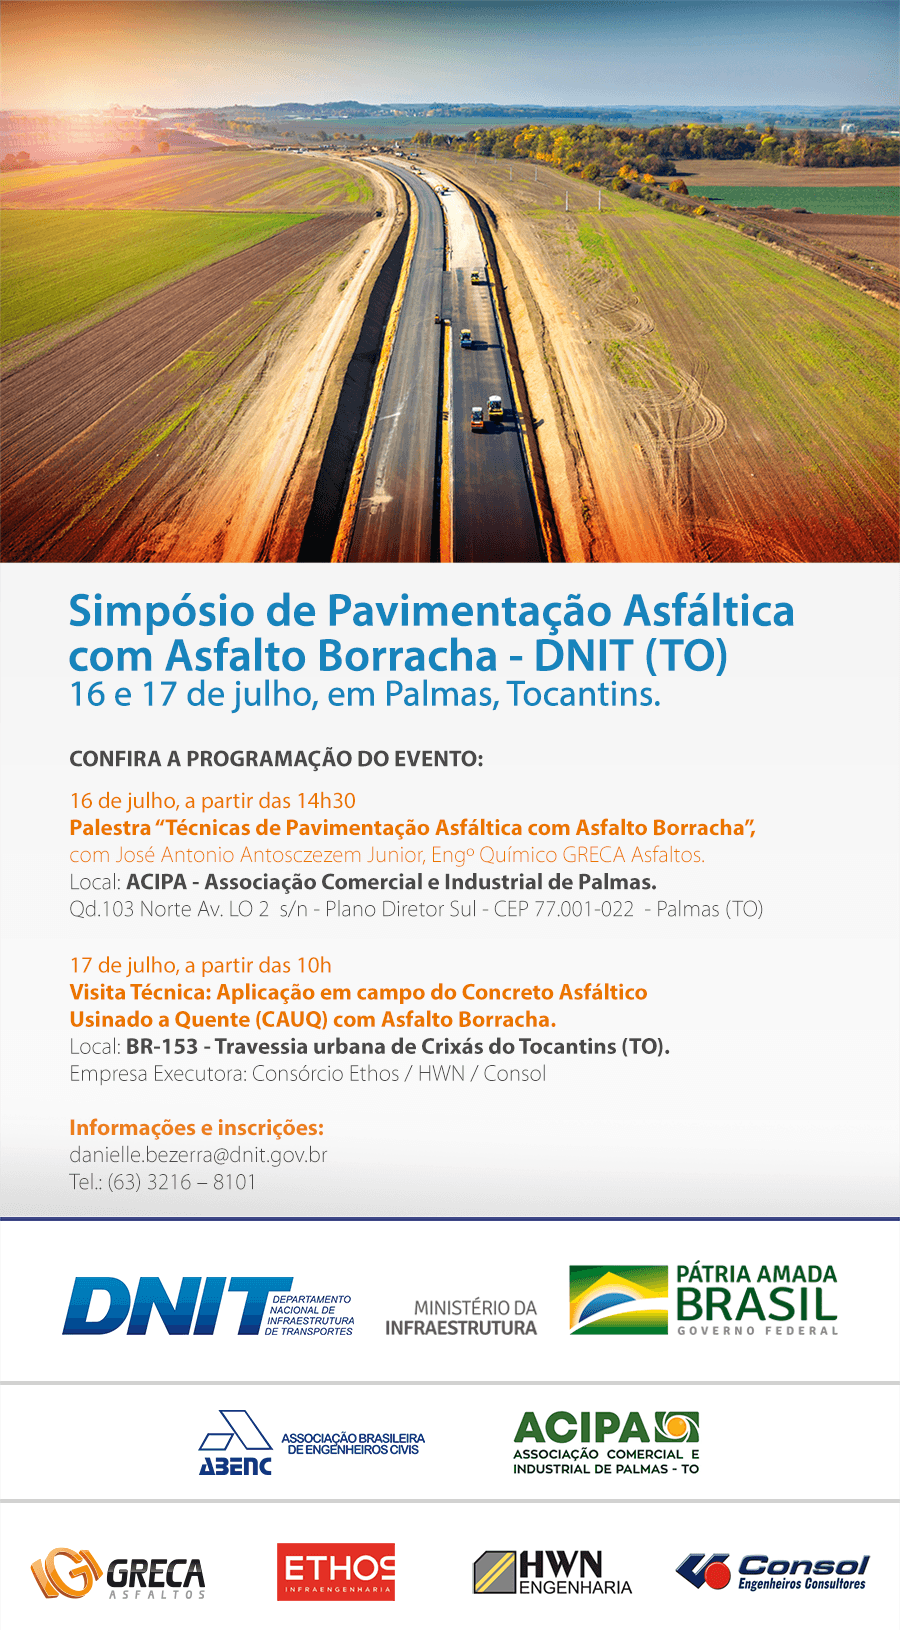 Simpósio de Pavimentação Asfáltica com Asfalto Borracha - DNIT (TO) 16 e 17 de julho, em Palmas, Tocantins.